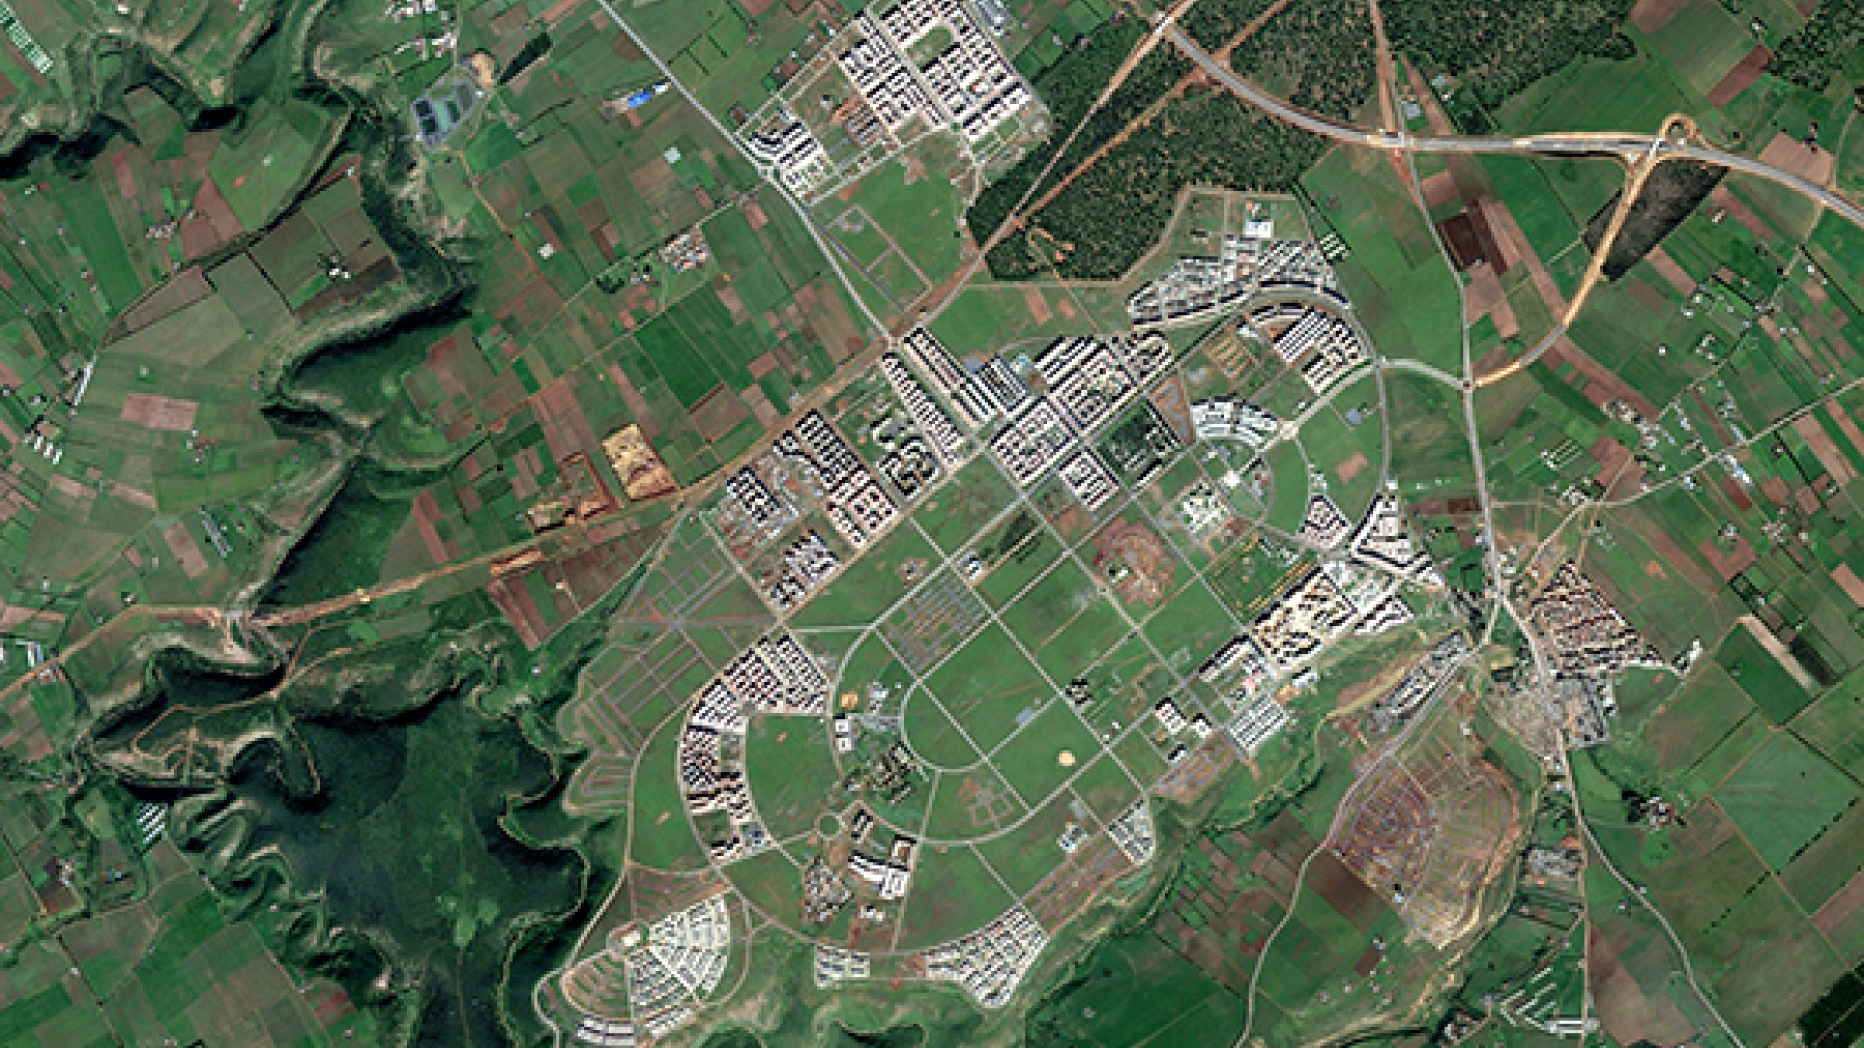 Satelite photo of urbanization in Morocco